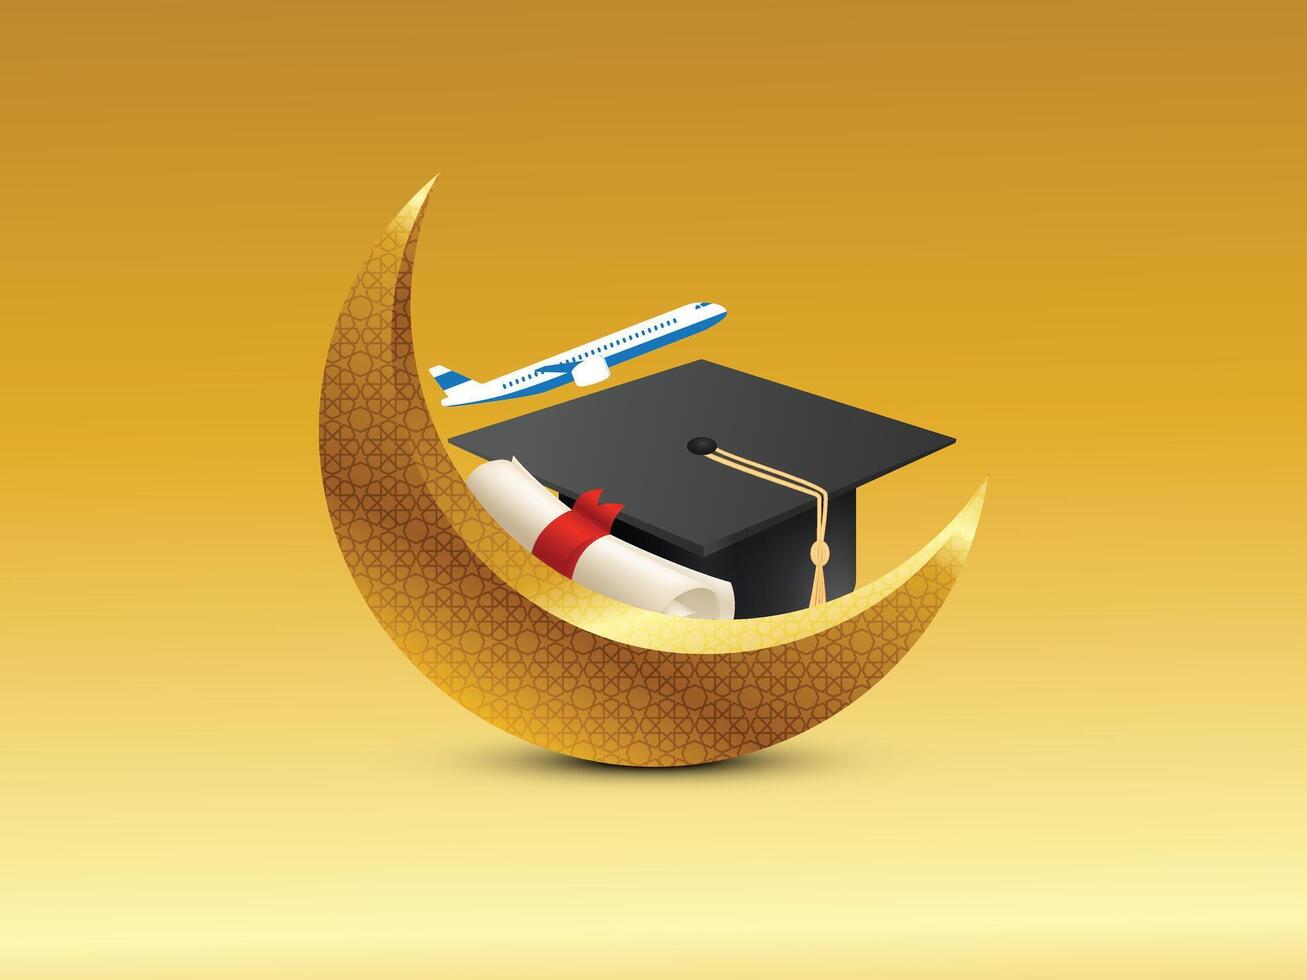 golden dekorativ Neu Mond mit Zertifikat isoliert auf ein Flugzeug, Absolvent Deckel, Ramadan, eid, Ausbildung, Fluggesellschaften, Luftfahrt, Tourismus, Stipendium, und islamisch Festival Banner Poster kreativ Design vektor